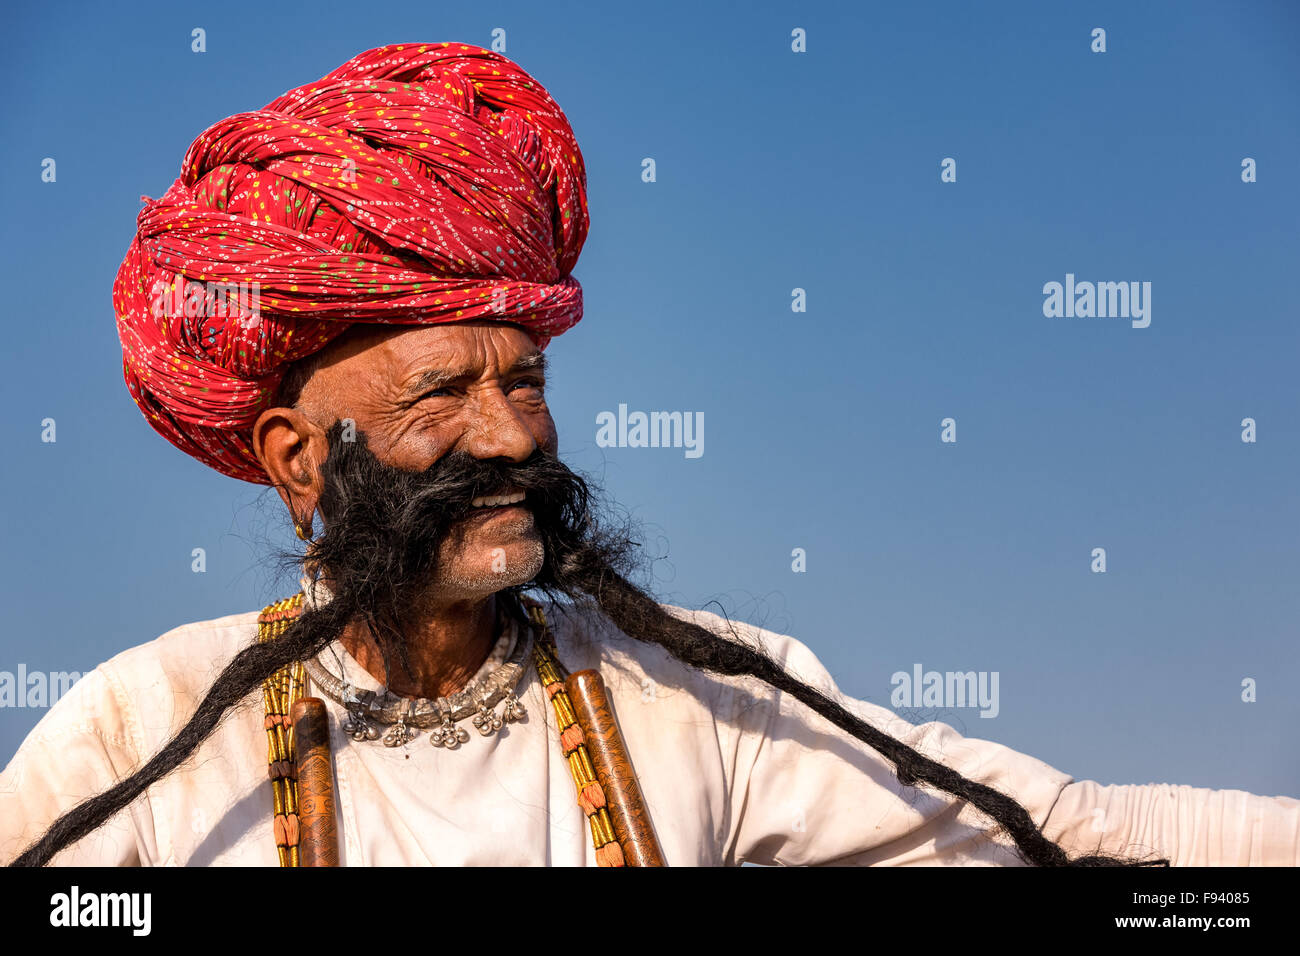 Ritratto di un uomo anziano da Rajasthan con barba lunga e turbante, Pushkar, Rajasthan, India Foto Stock